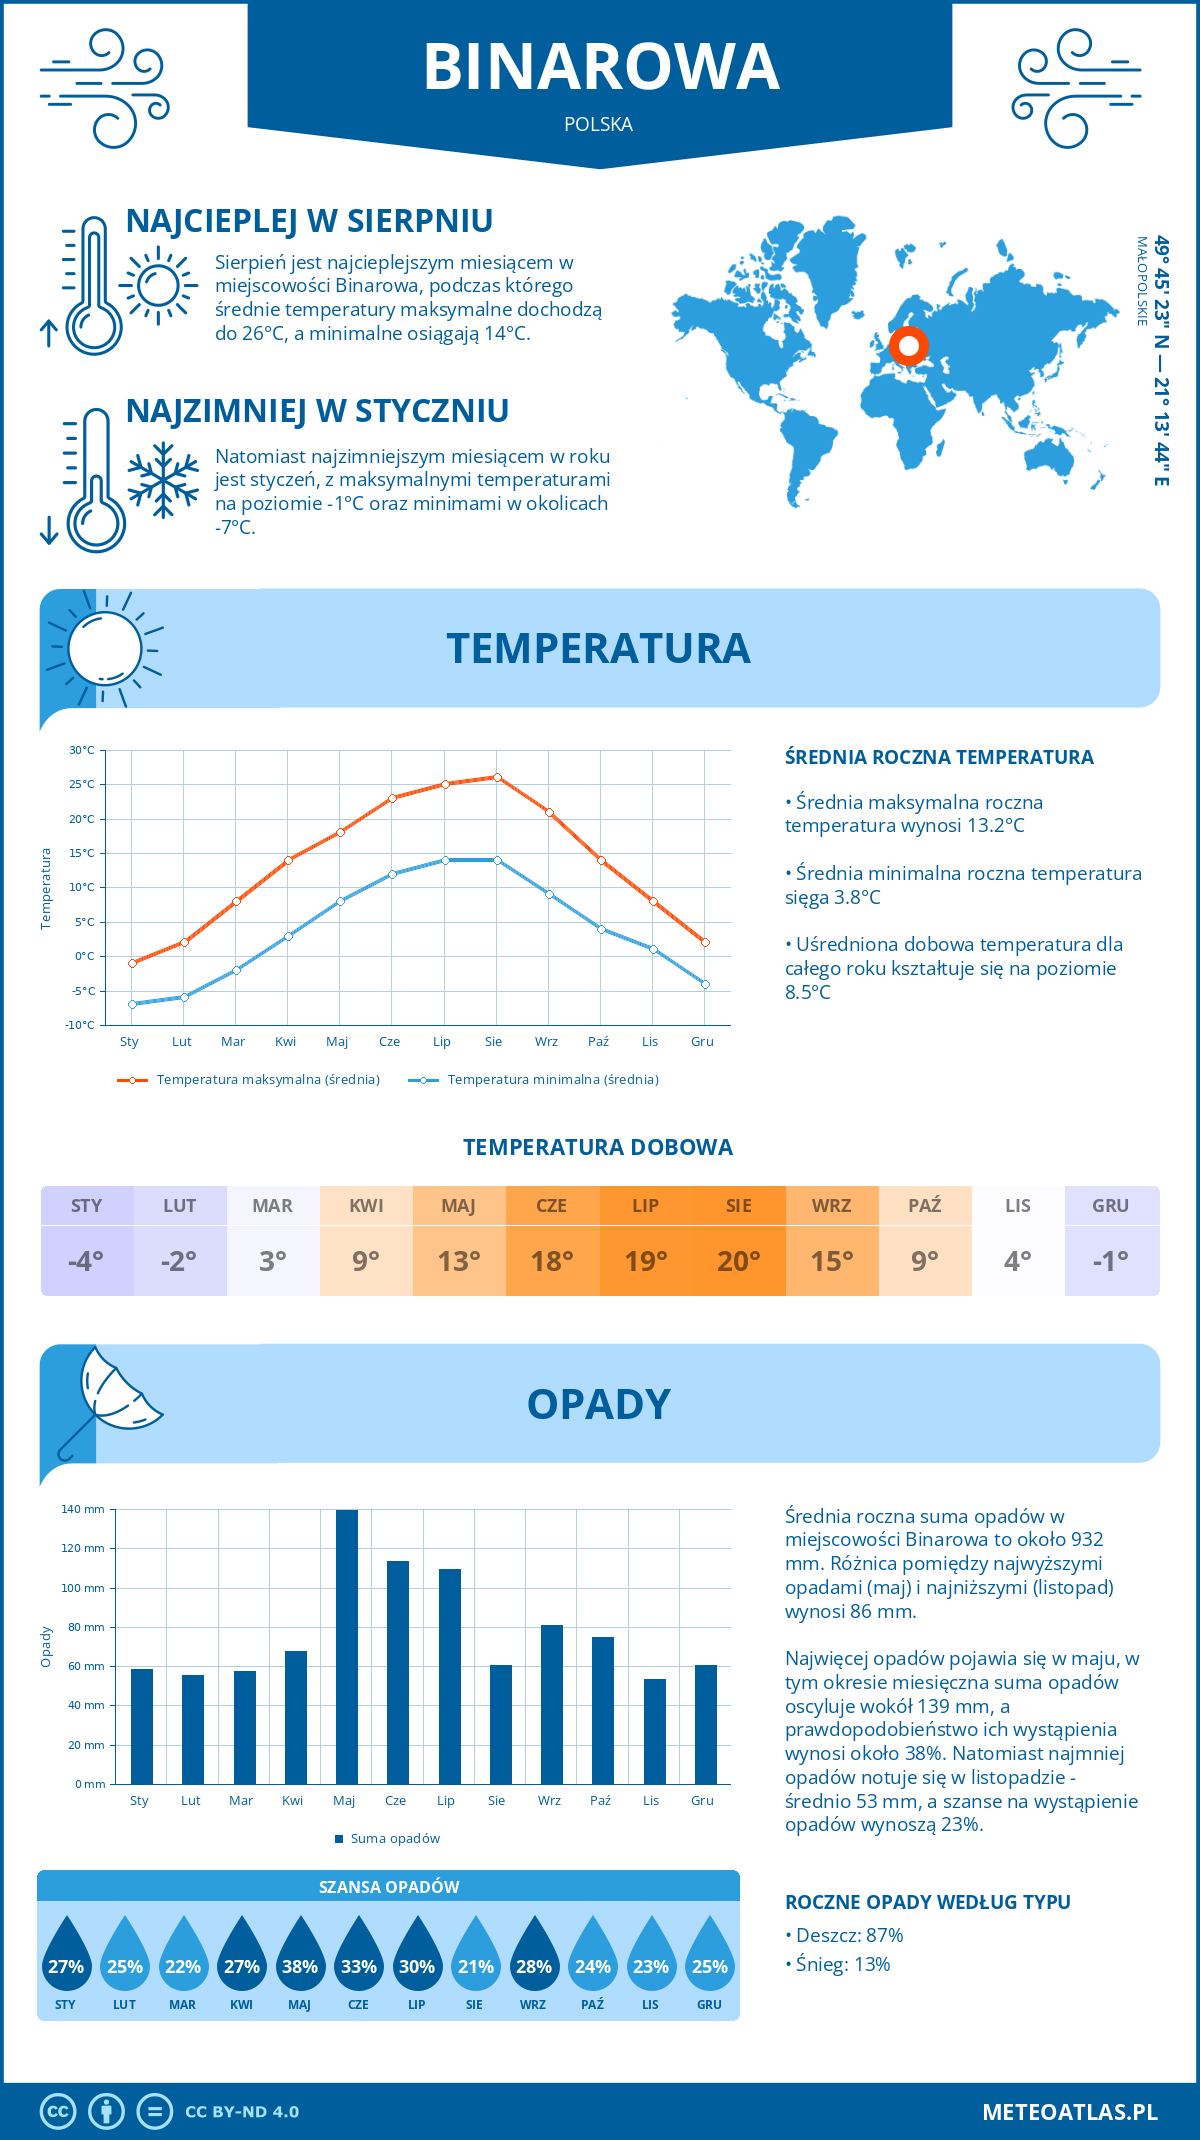 Pogoda Binarowa (Polska). Temperatura oraz opady.